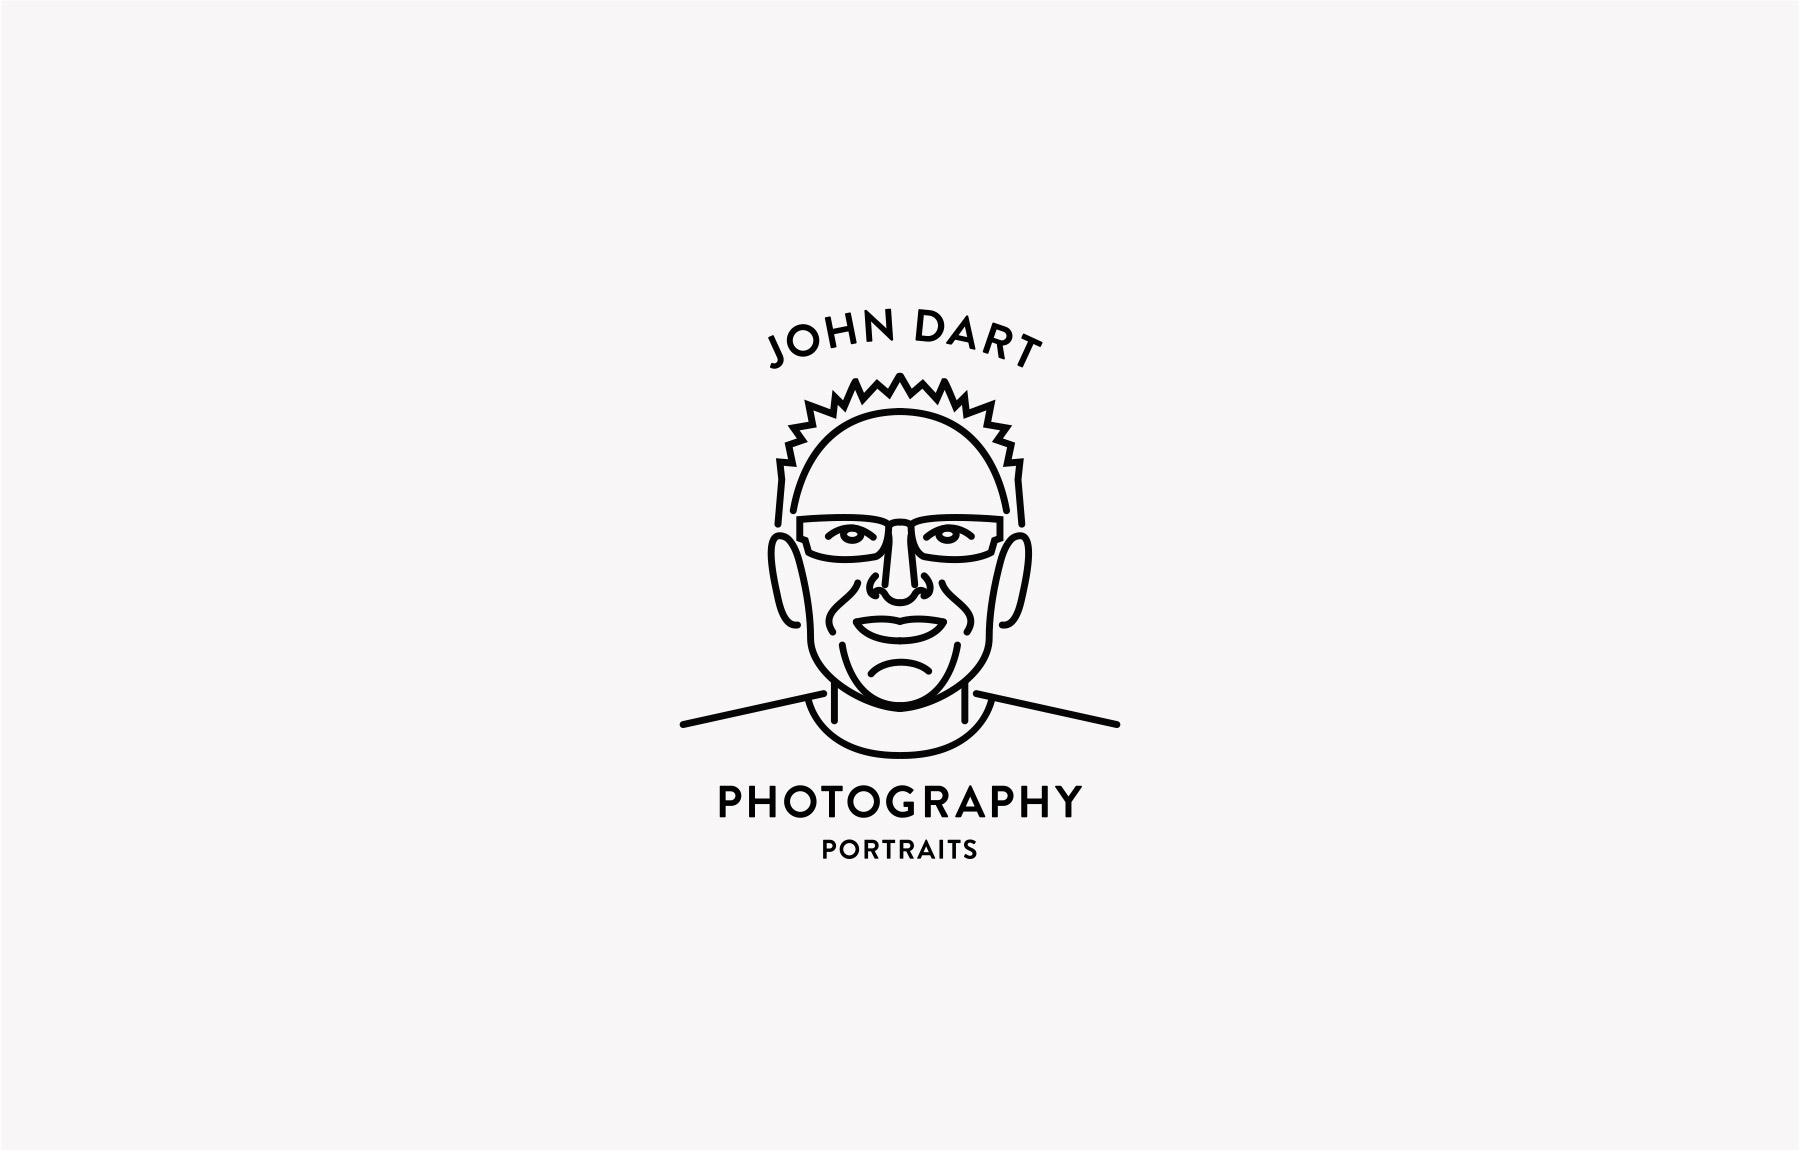 John Dart Photography company logo